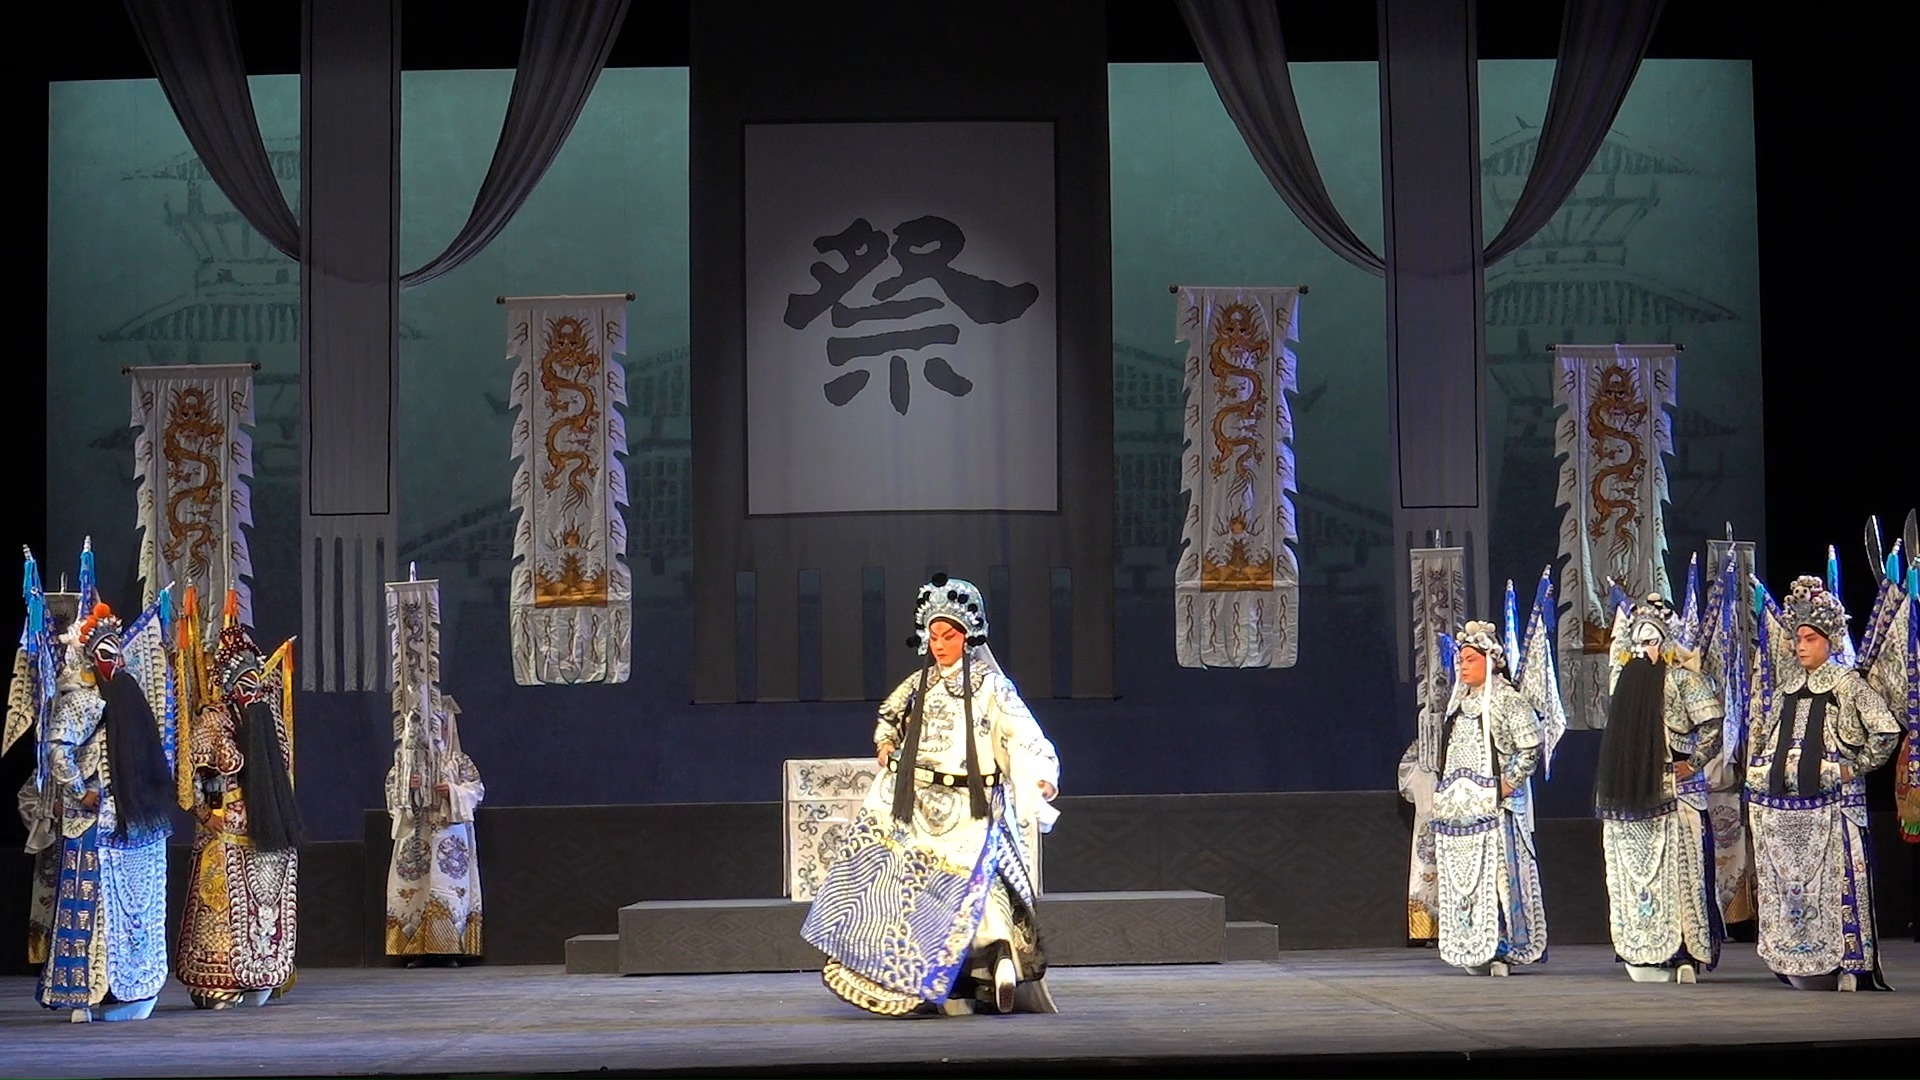 【京剧】《马超》唐恺 “我们的中国梦”——文化进万家 湖北省京剧院  6月16日 演出